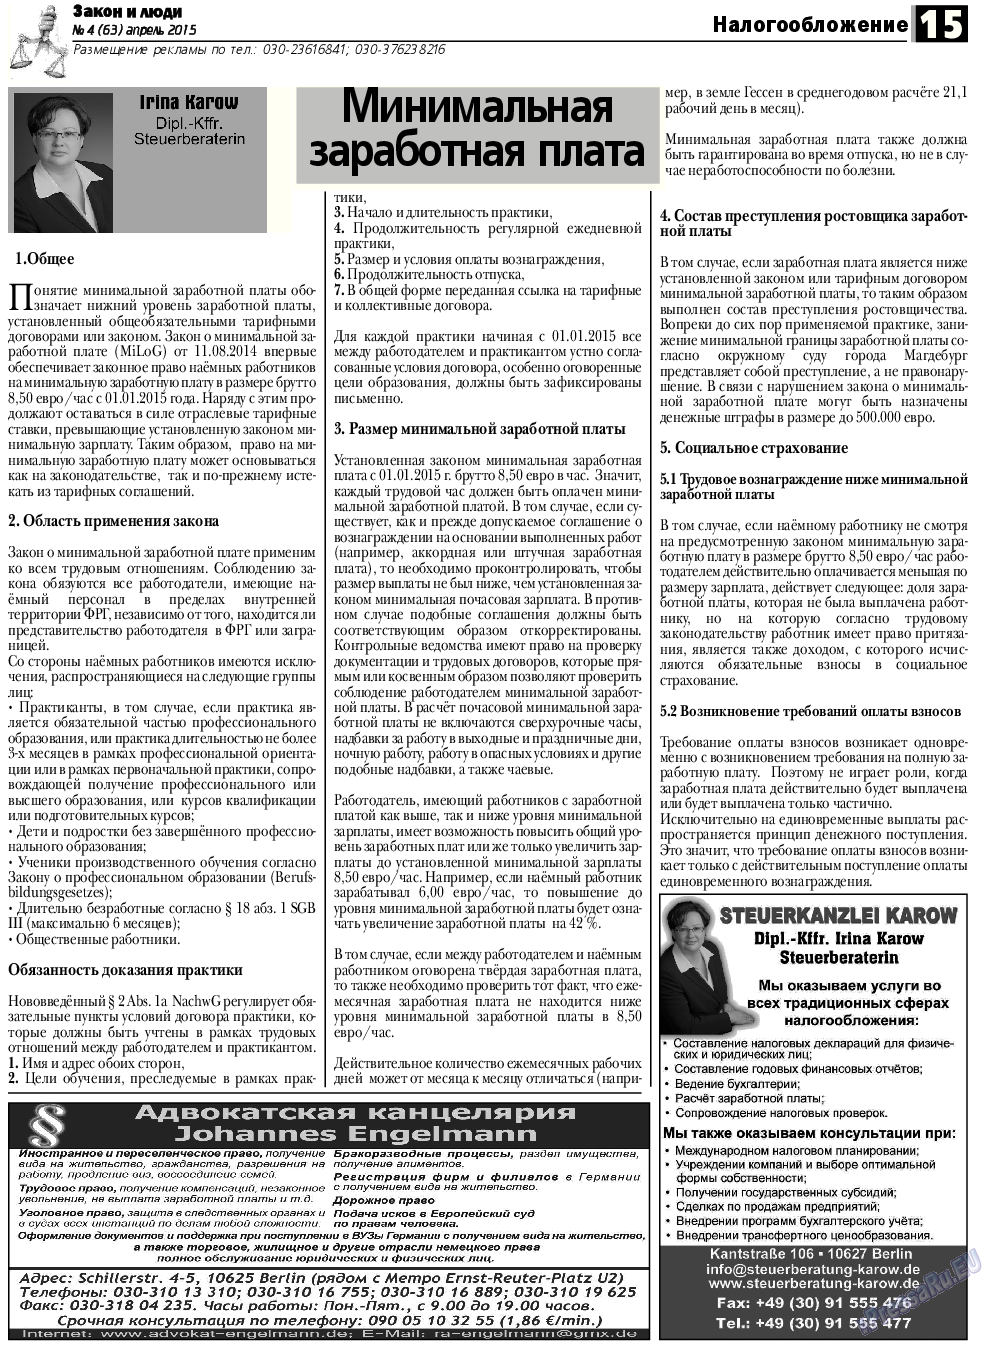 Закон и люди, газета. 2015 №4 стр.15